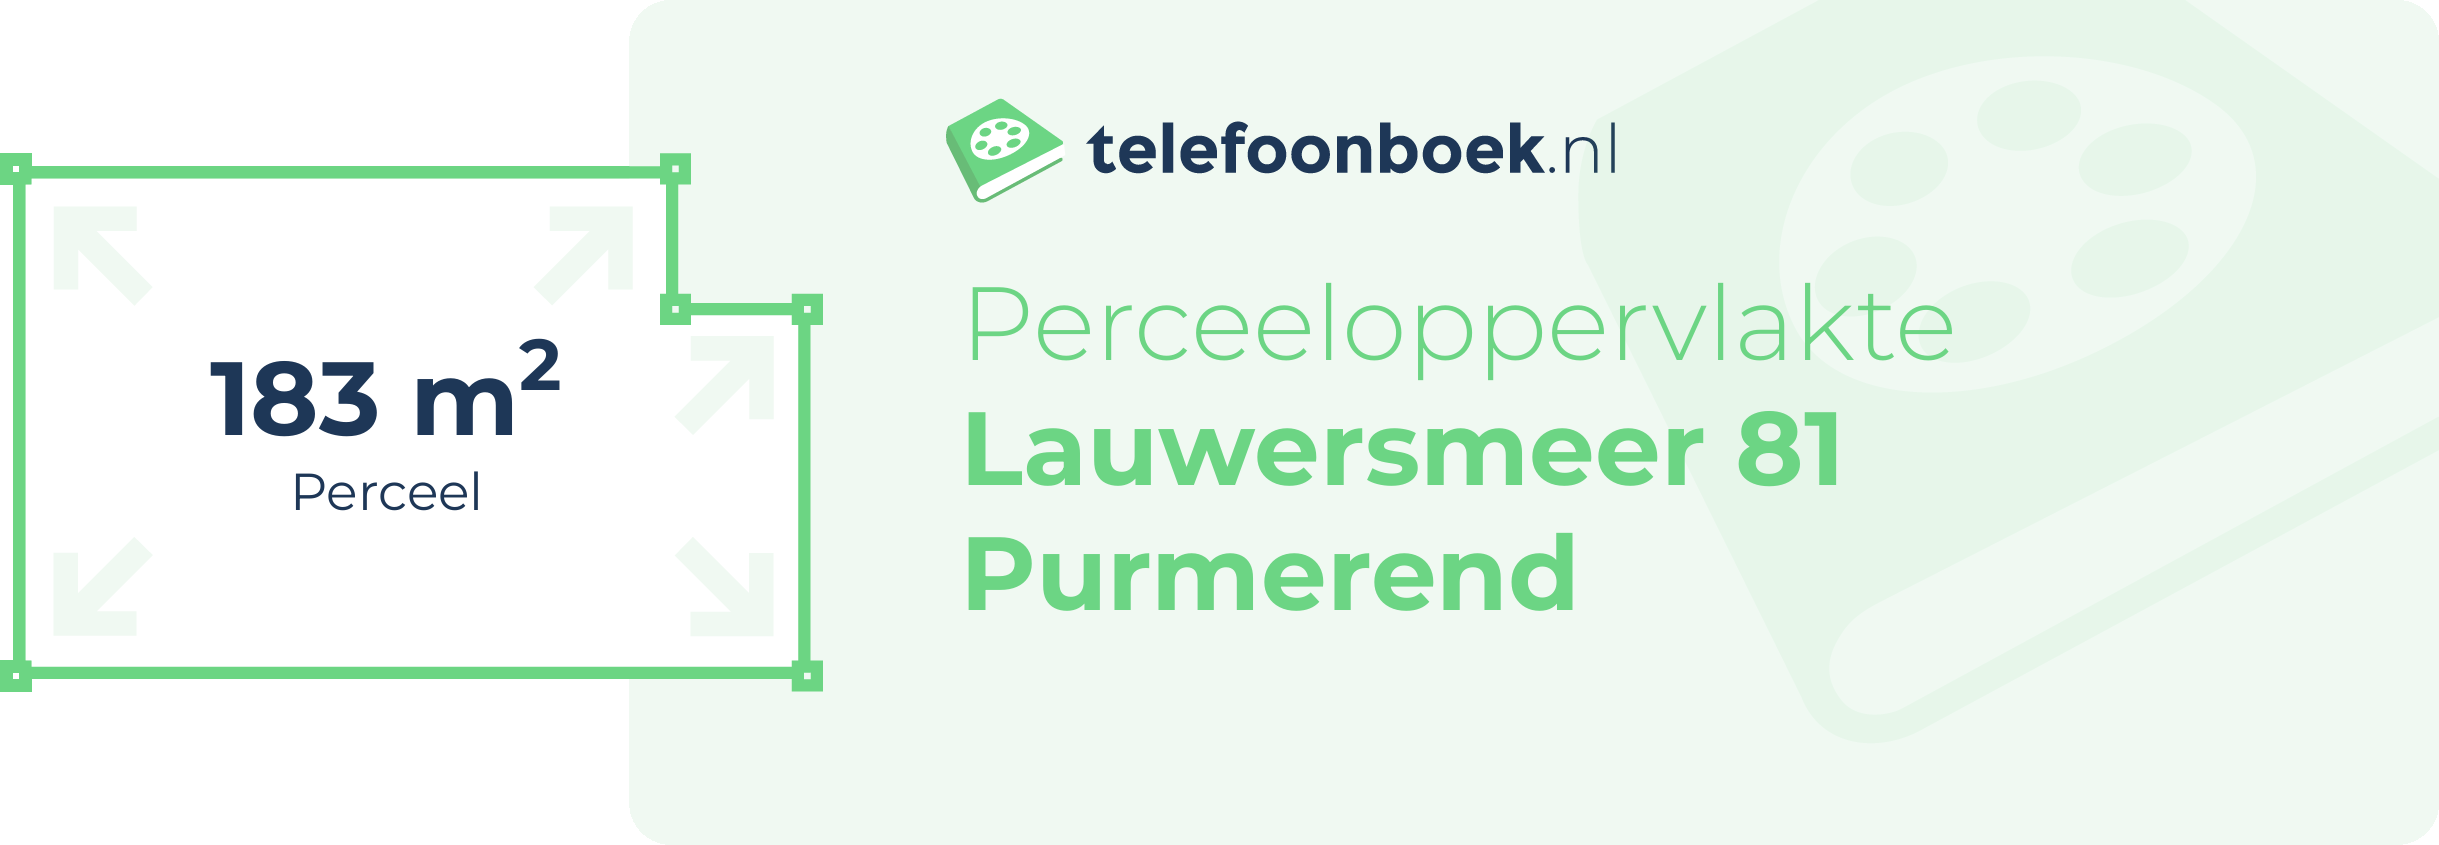 Perceeloppervlakte Lauwersmeer 81 Purmerend